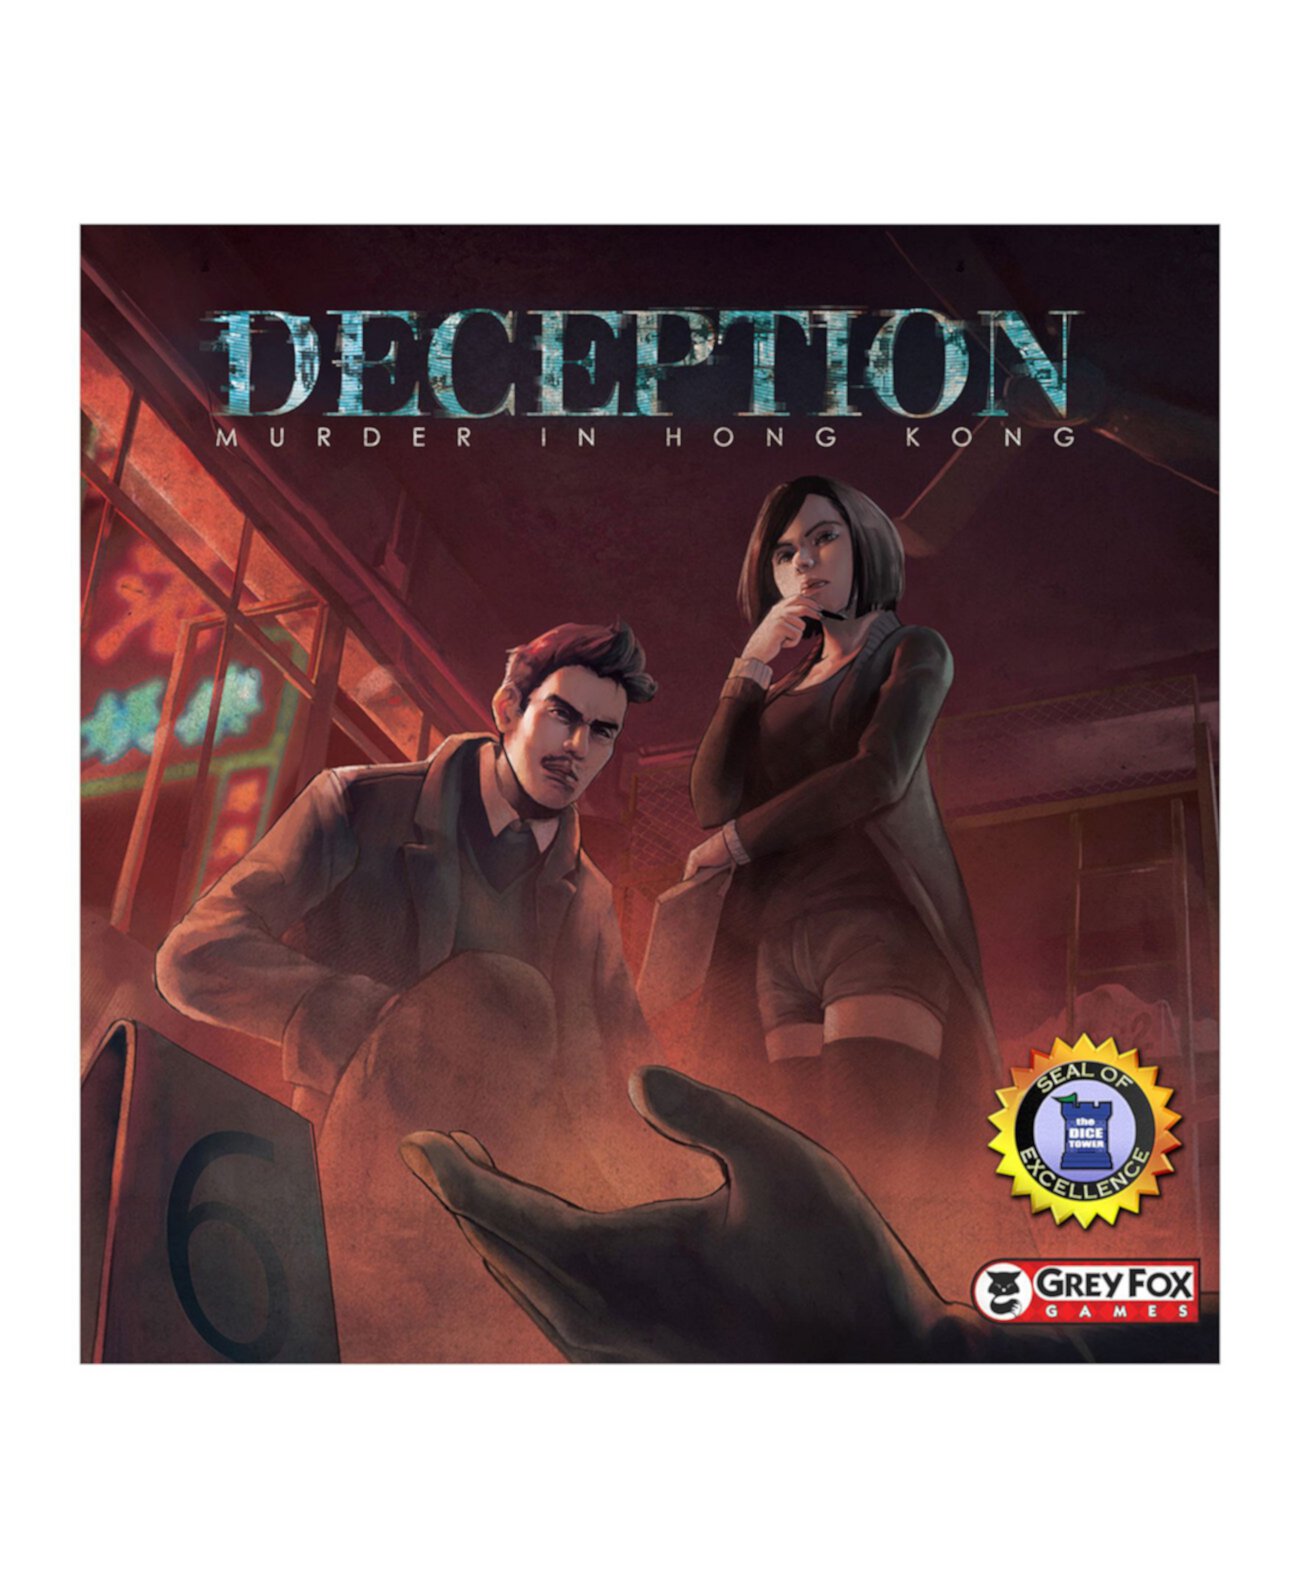 Game game обман. Криминалист игра. Deception настольная игра-. Deception: Murderer in honkkong настолка.